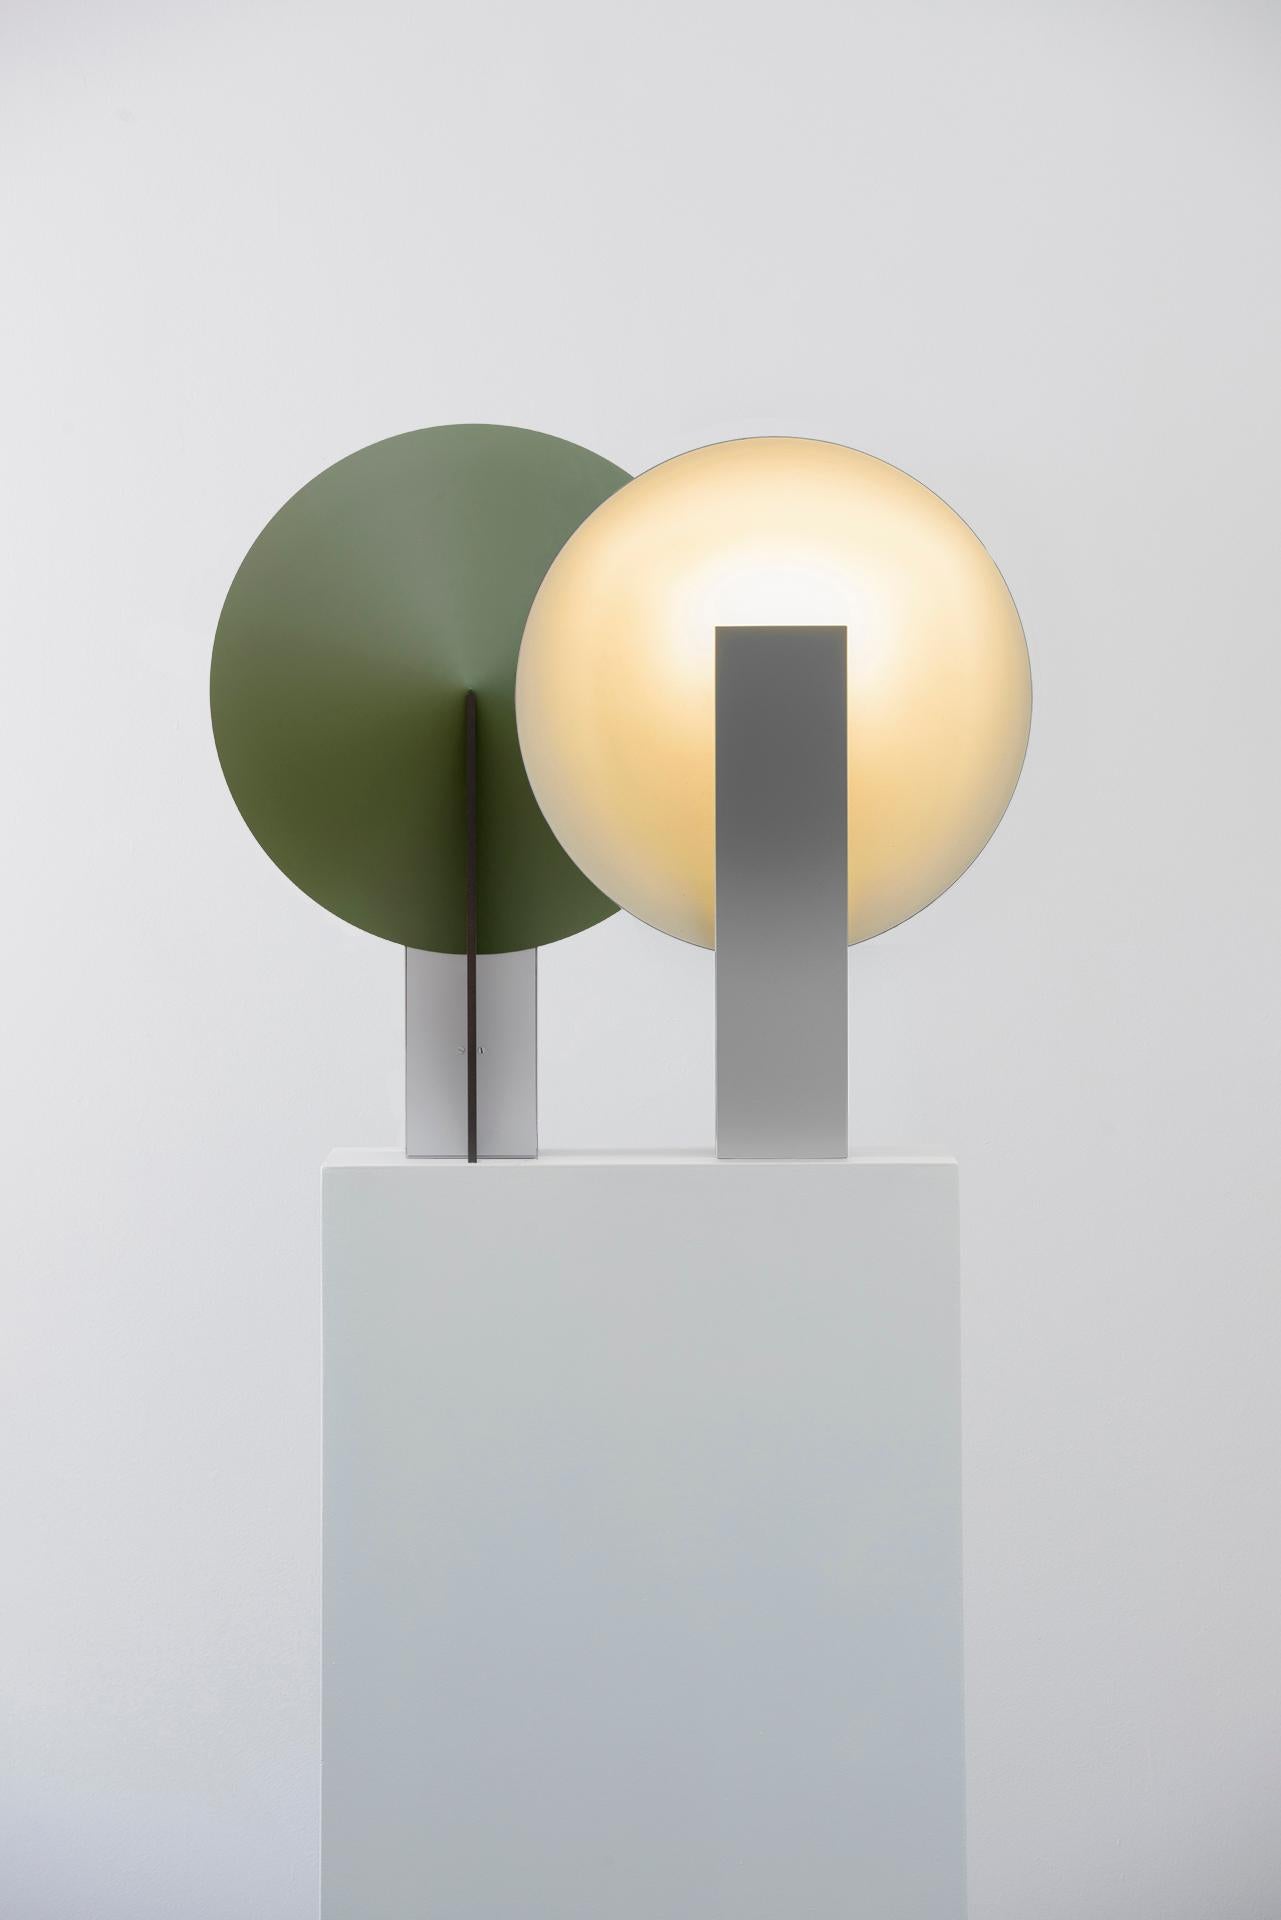 ORBE est une lampe de table à lumière indirecte, conçue pour fournir un éclairage doux à l'environnement.

La pièce a une structure simple, composée du minimum requis pour sa fonctionnalité : la boîte frontale abrite la source lumineuse et fournit